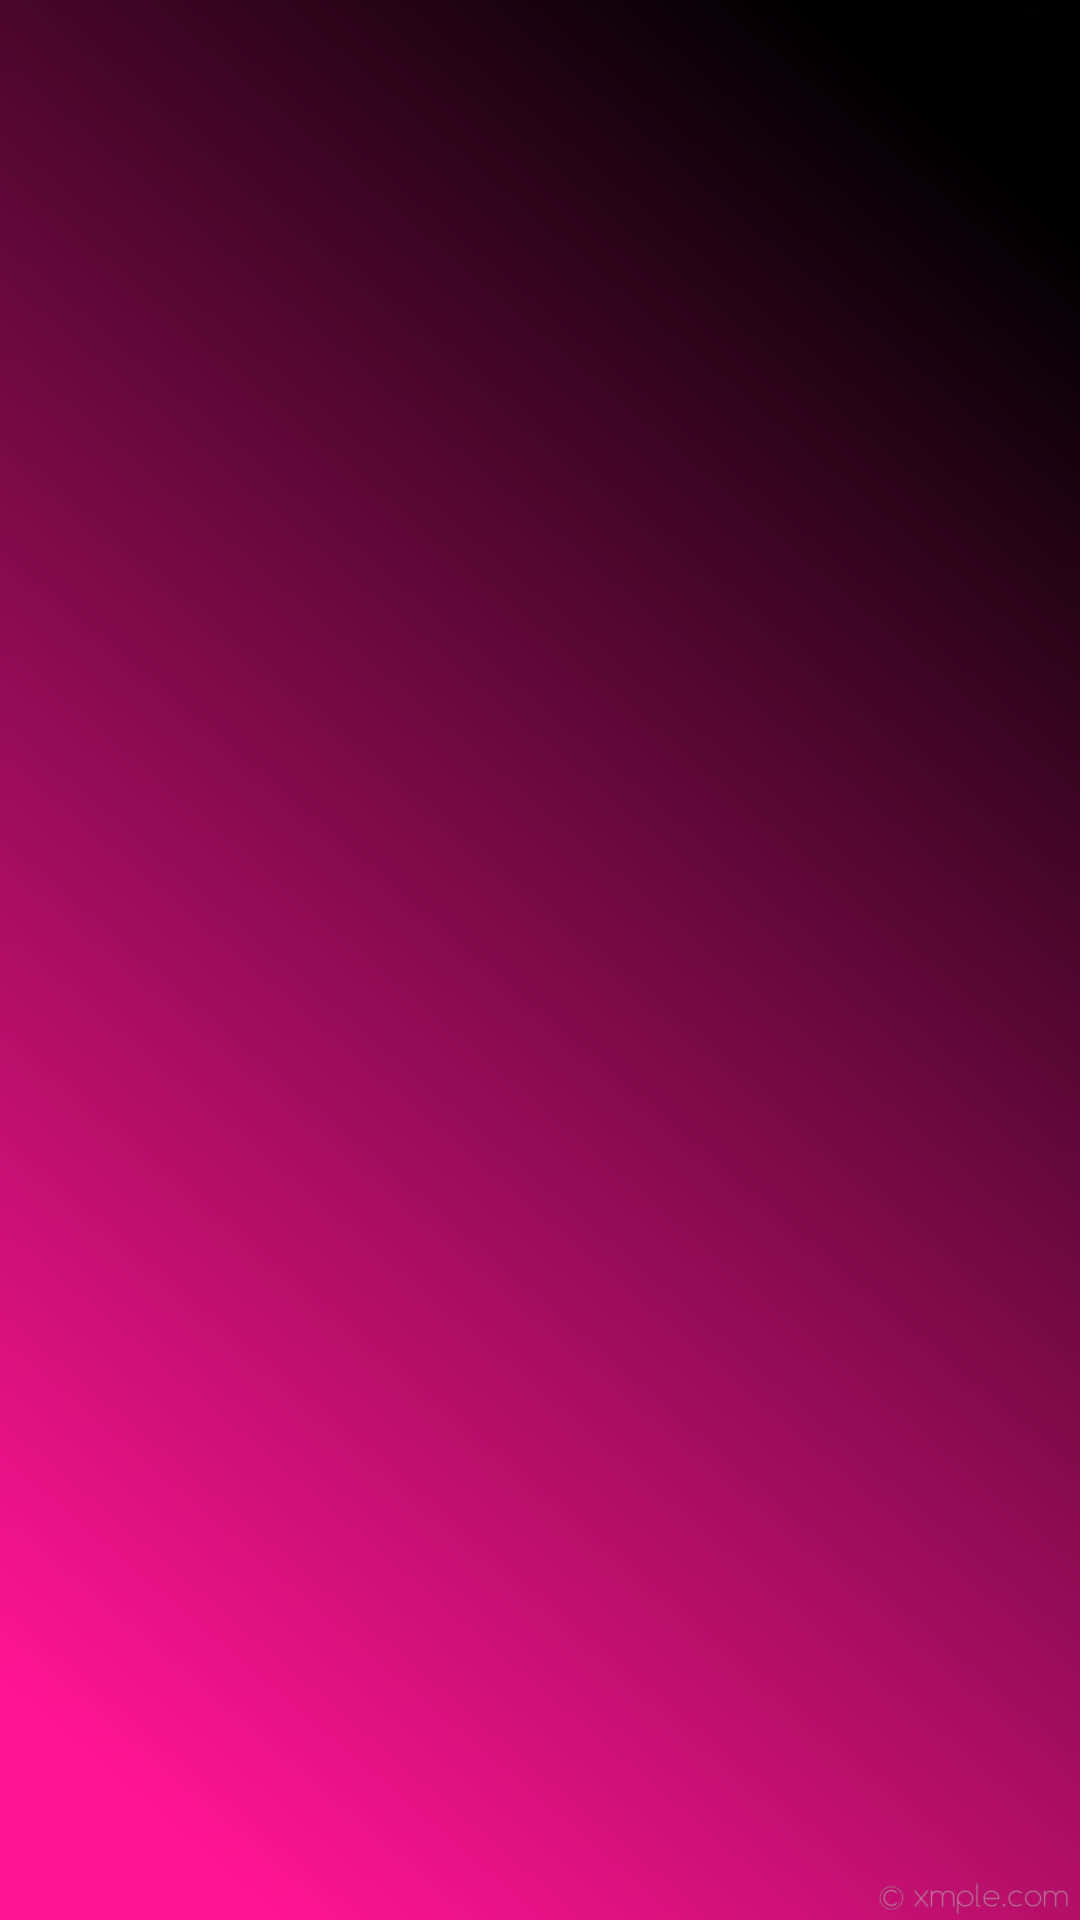 Stærk farvekombination – pink og sort Wallpaper